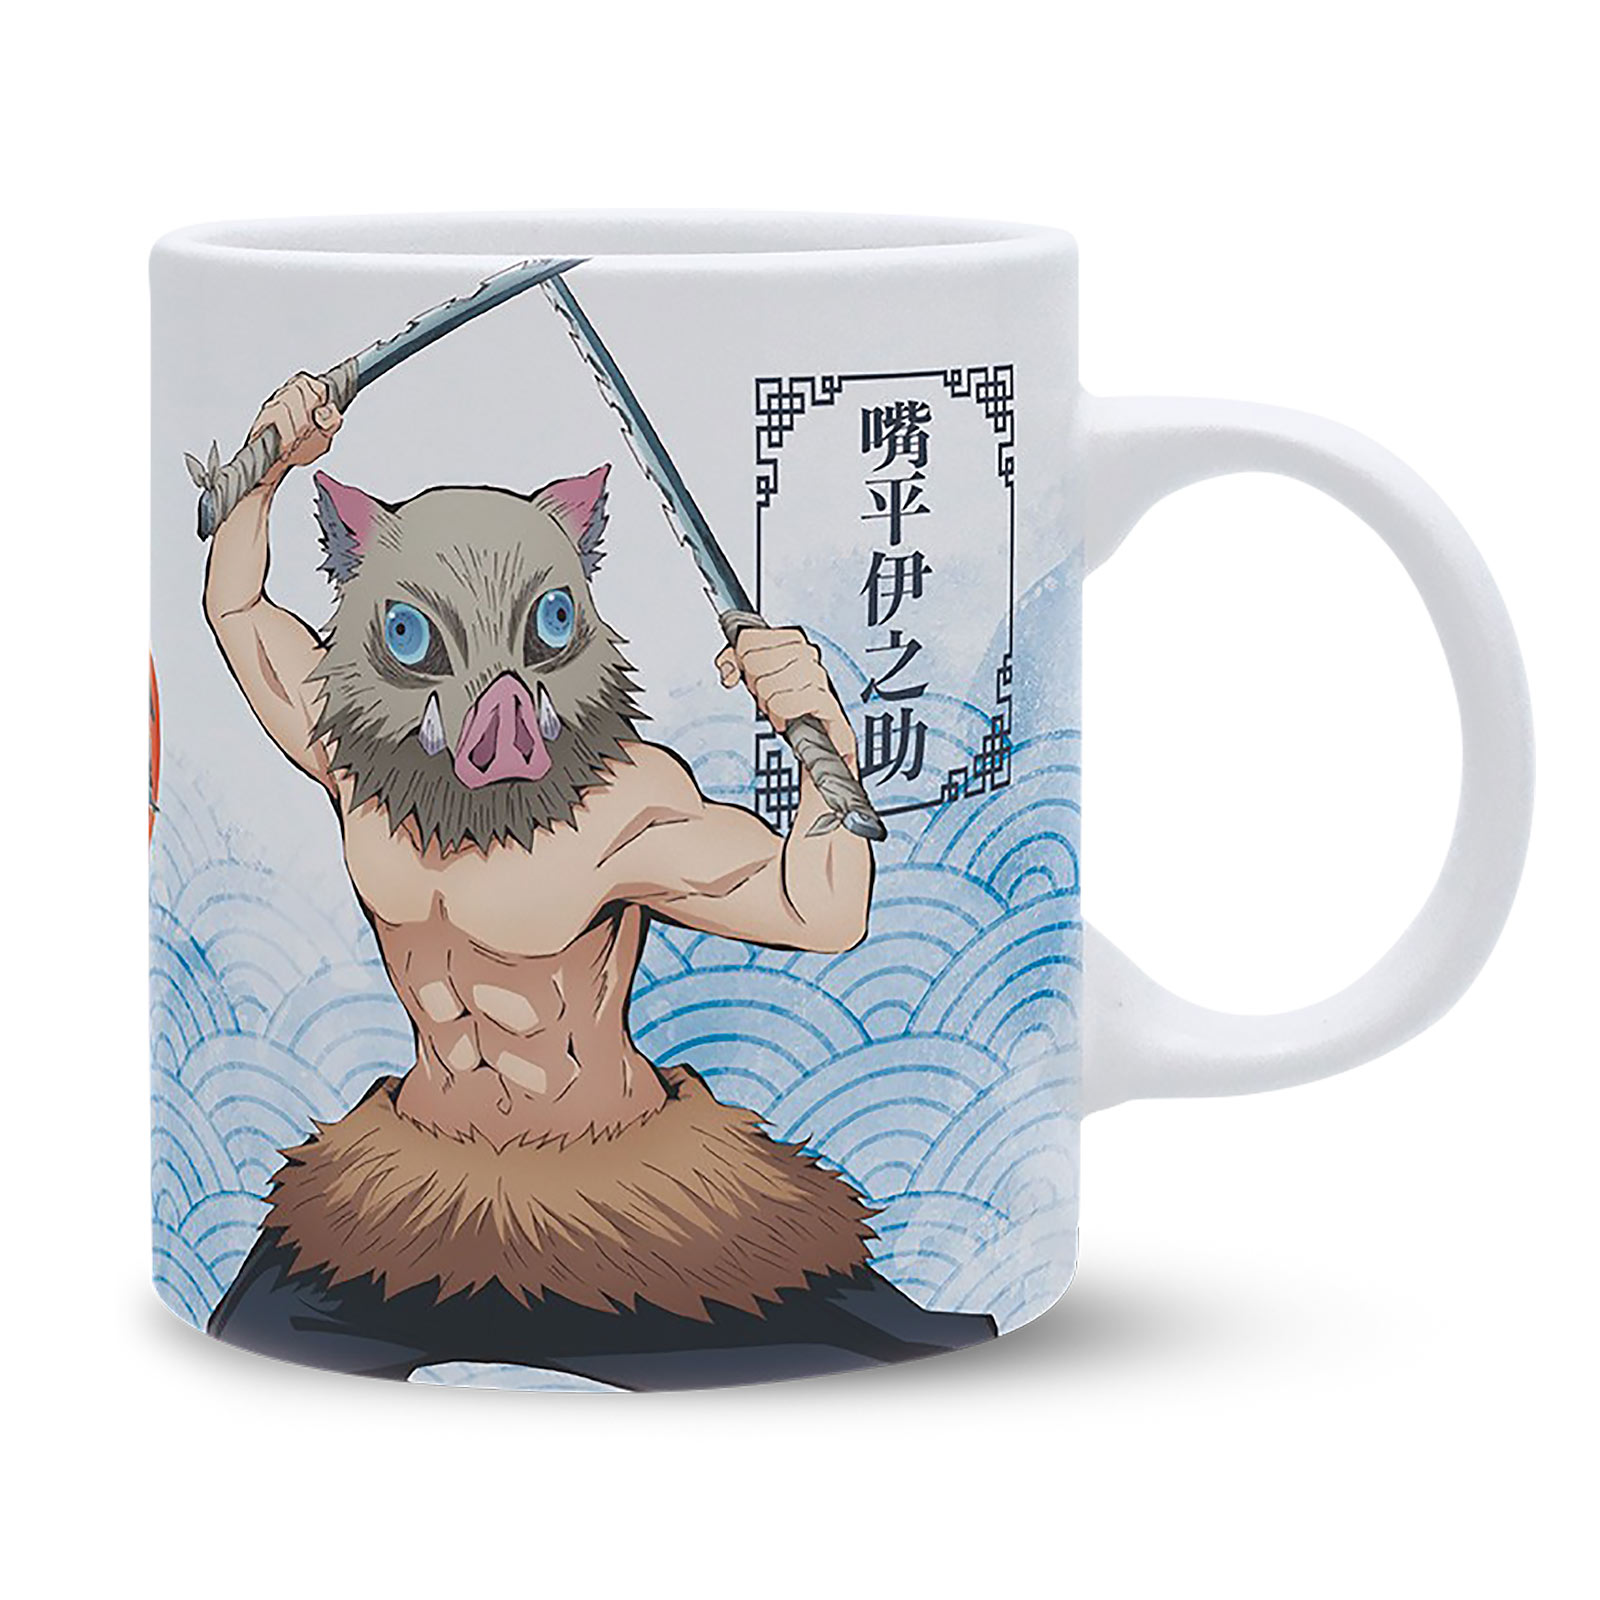 Demon Slayer - Zenitsu & Inosuke Mug